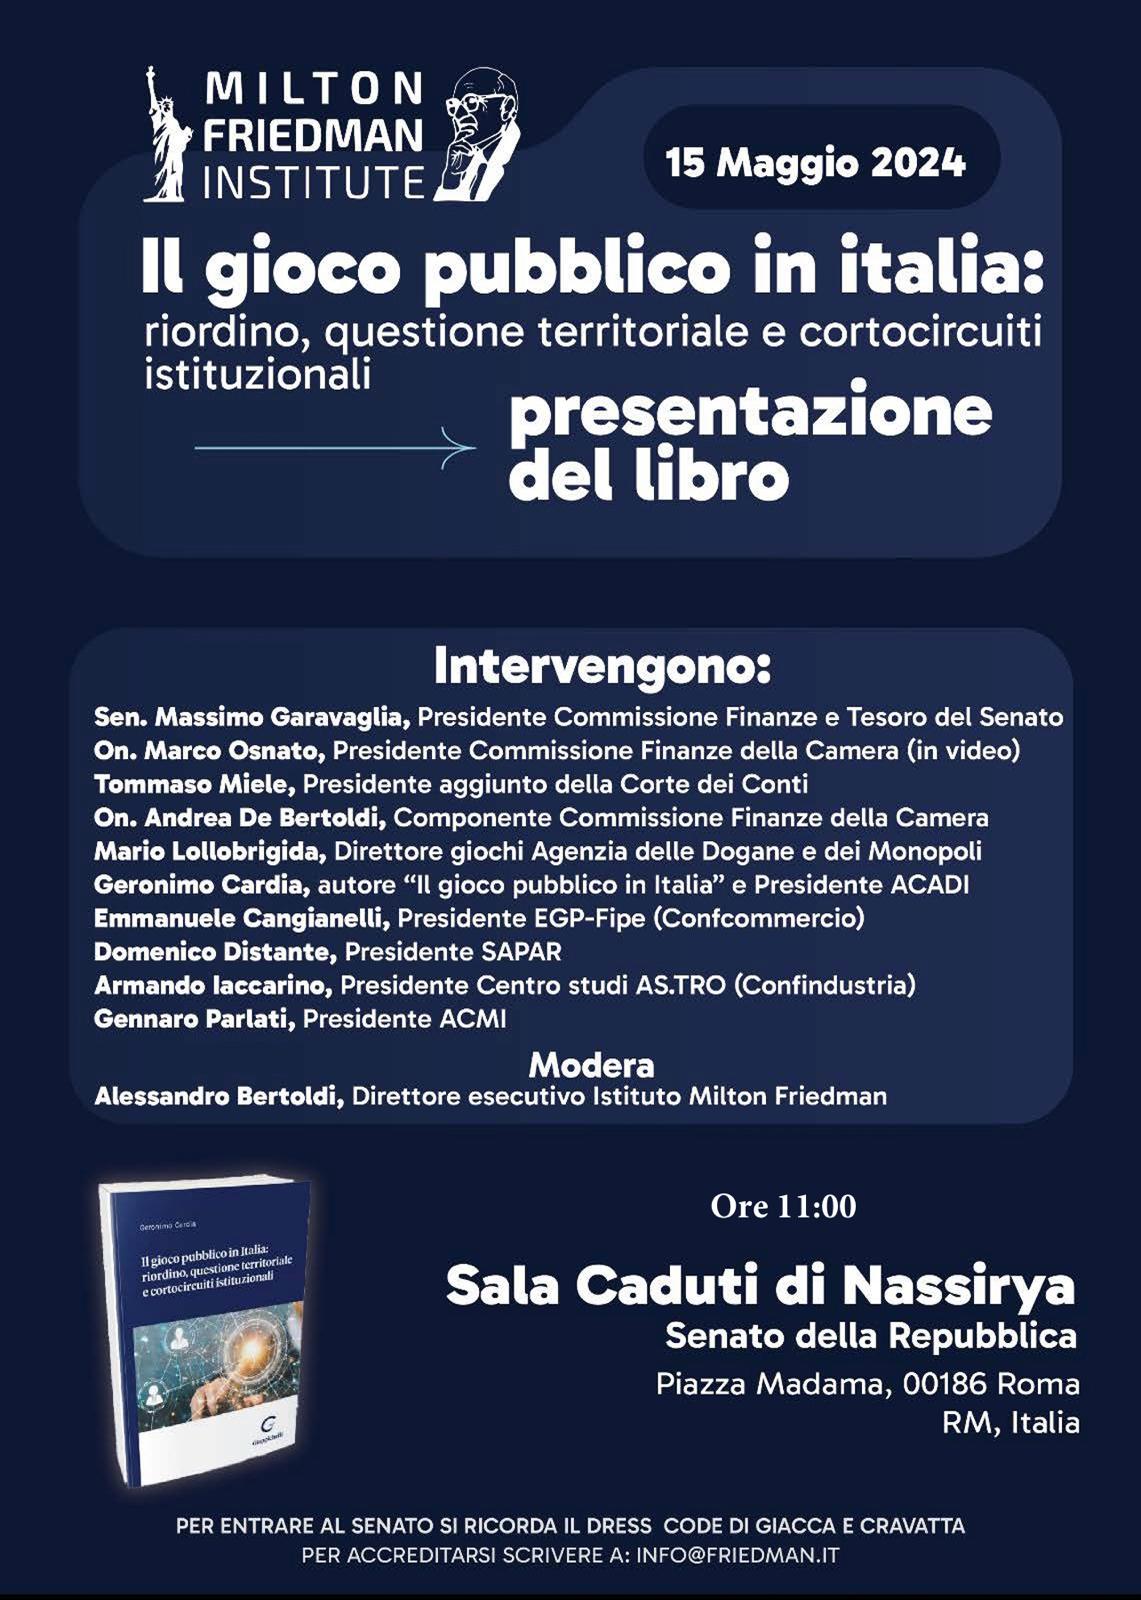 Il gioco pubblico in Italia: riordino questione territoriale e cortocircuiti istituzionali